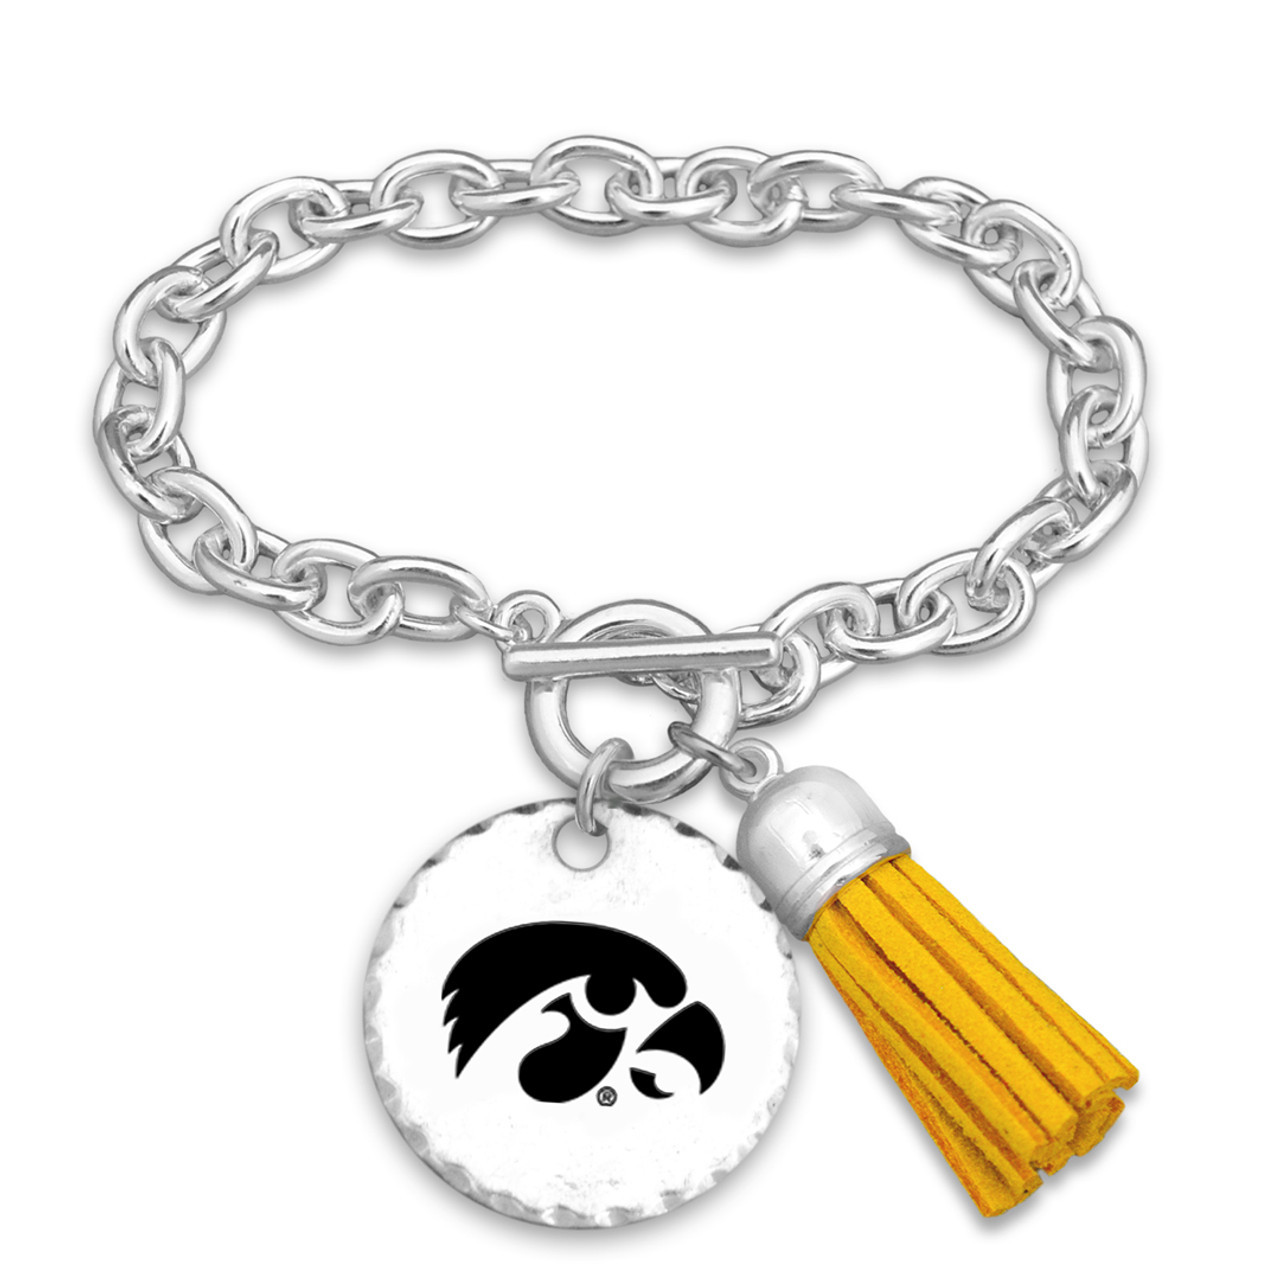 Iowa Hawkeyes Bracelet- Fringe Benefits